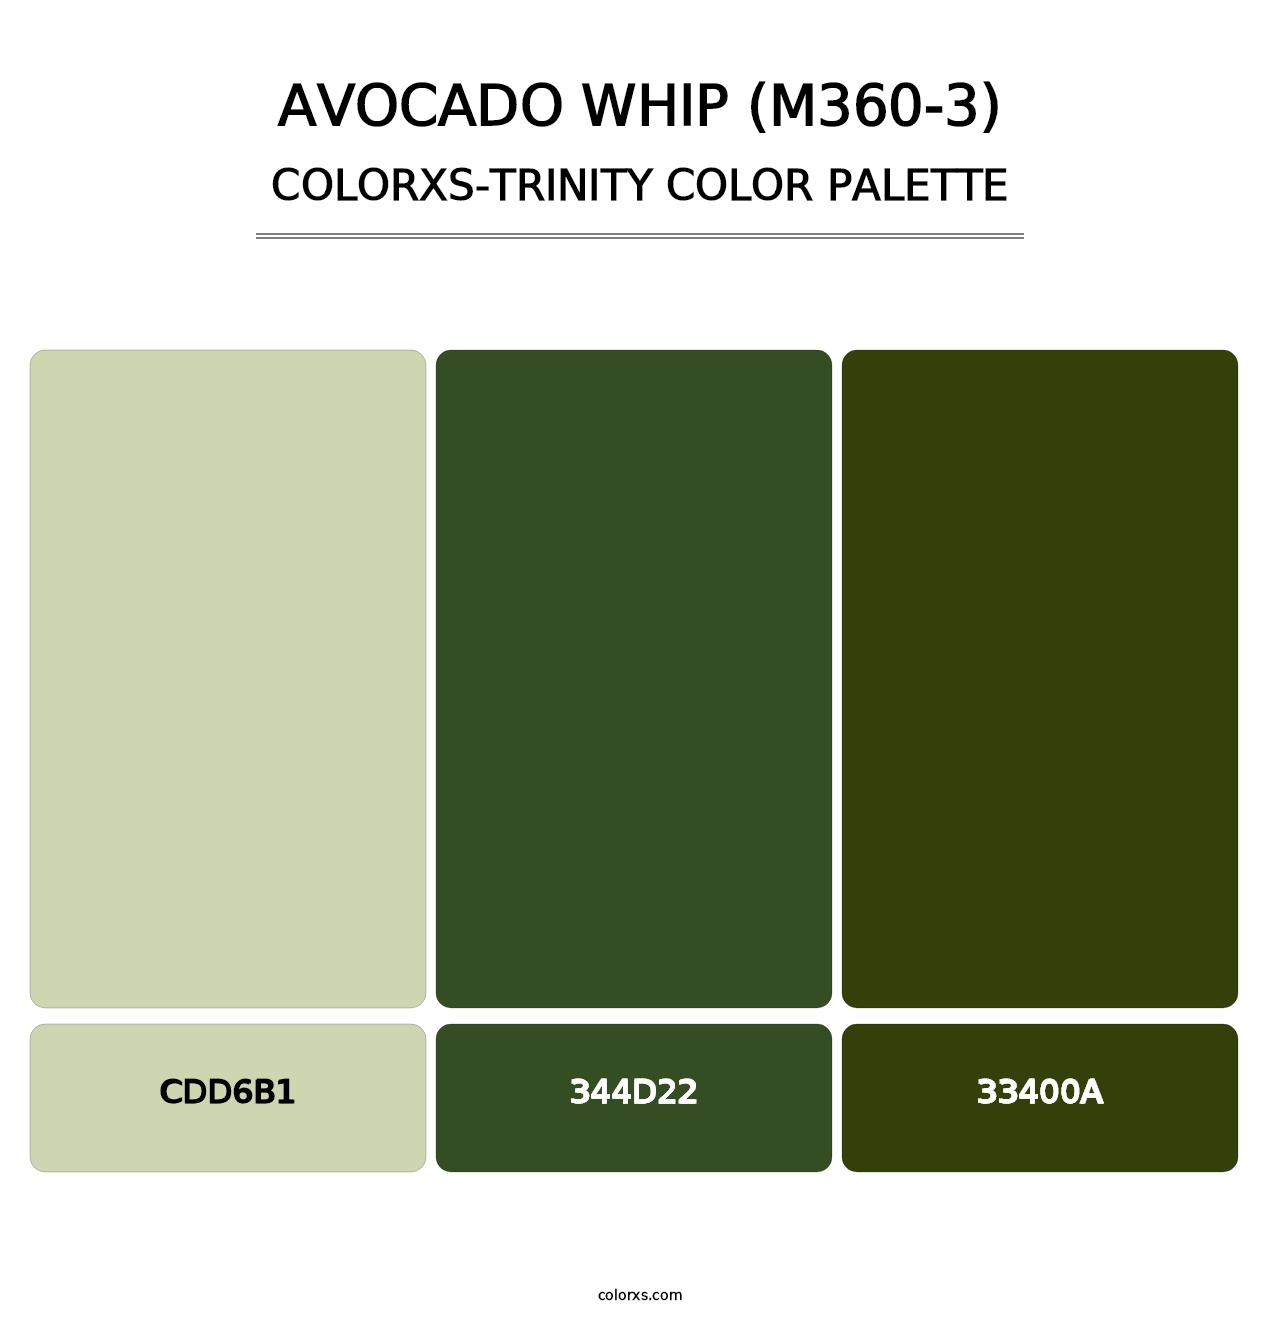 Avocado Whip (M360-3) - Colorxs Trinity Palette